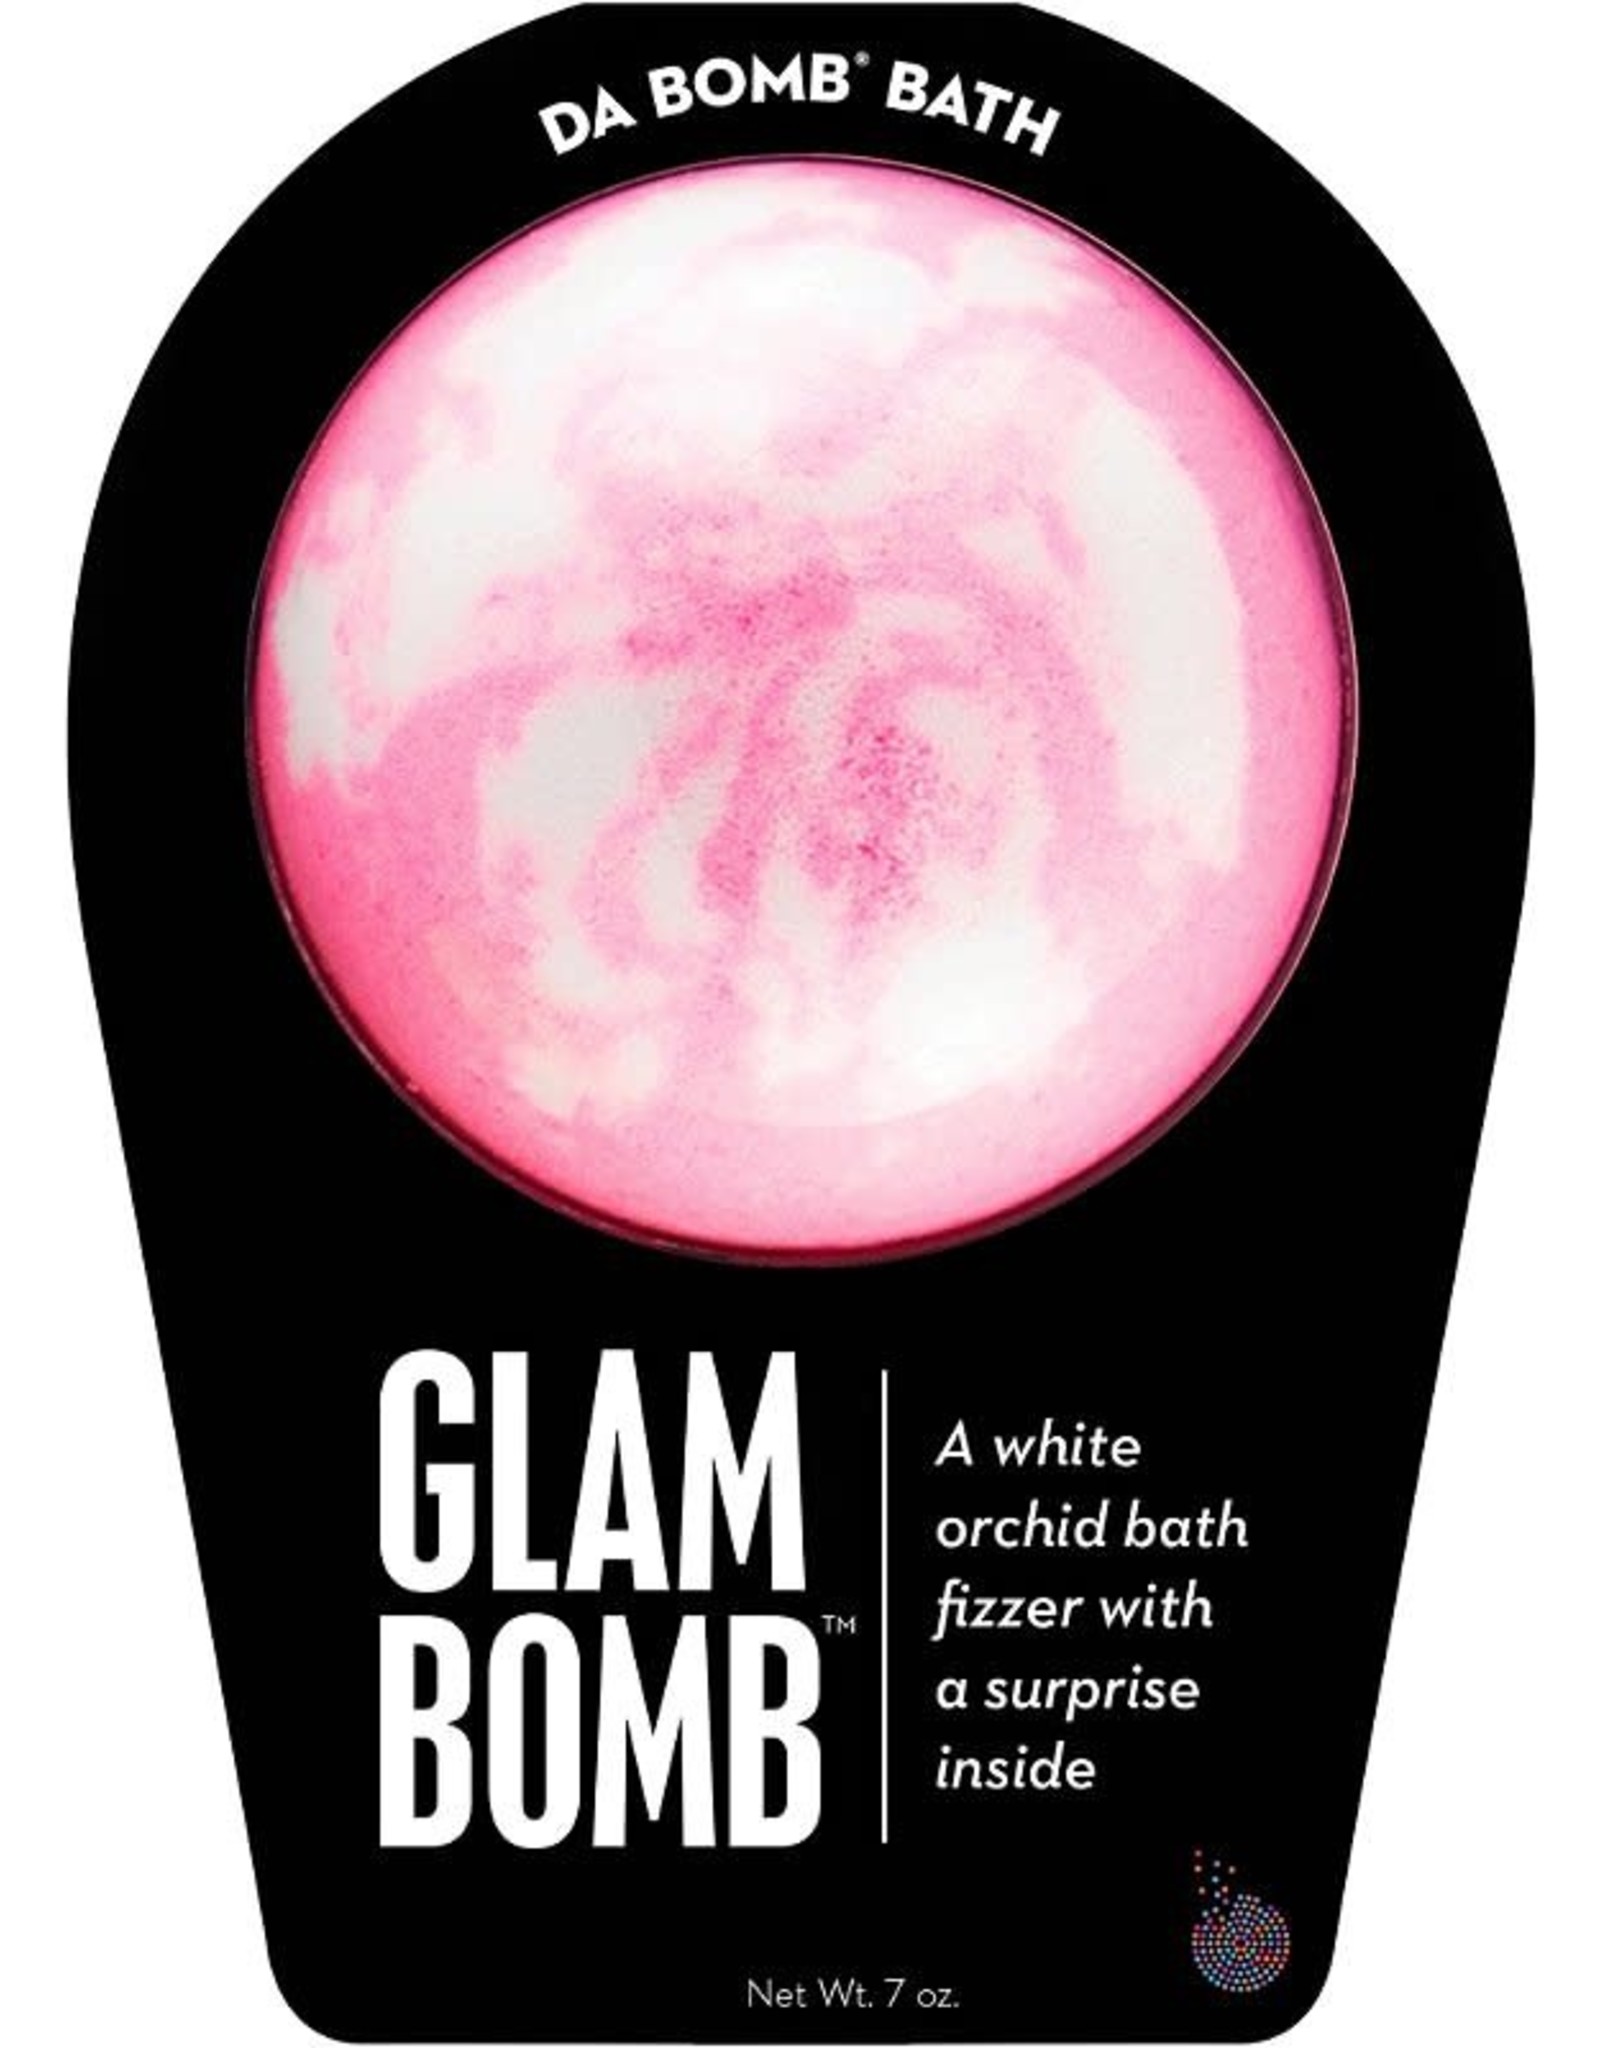 Da Bomb Glam Bath Bombs